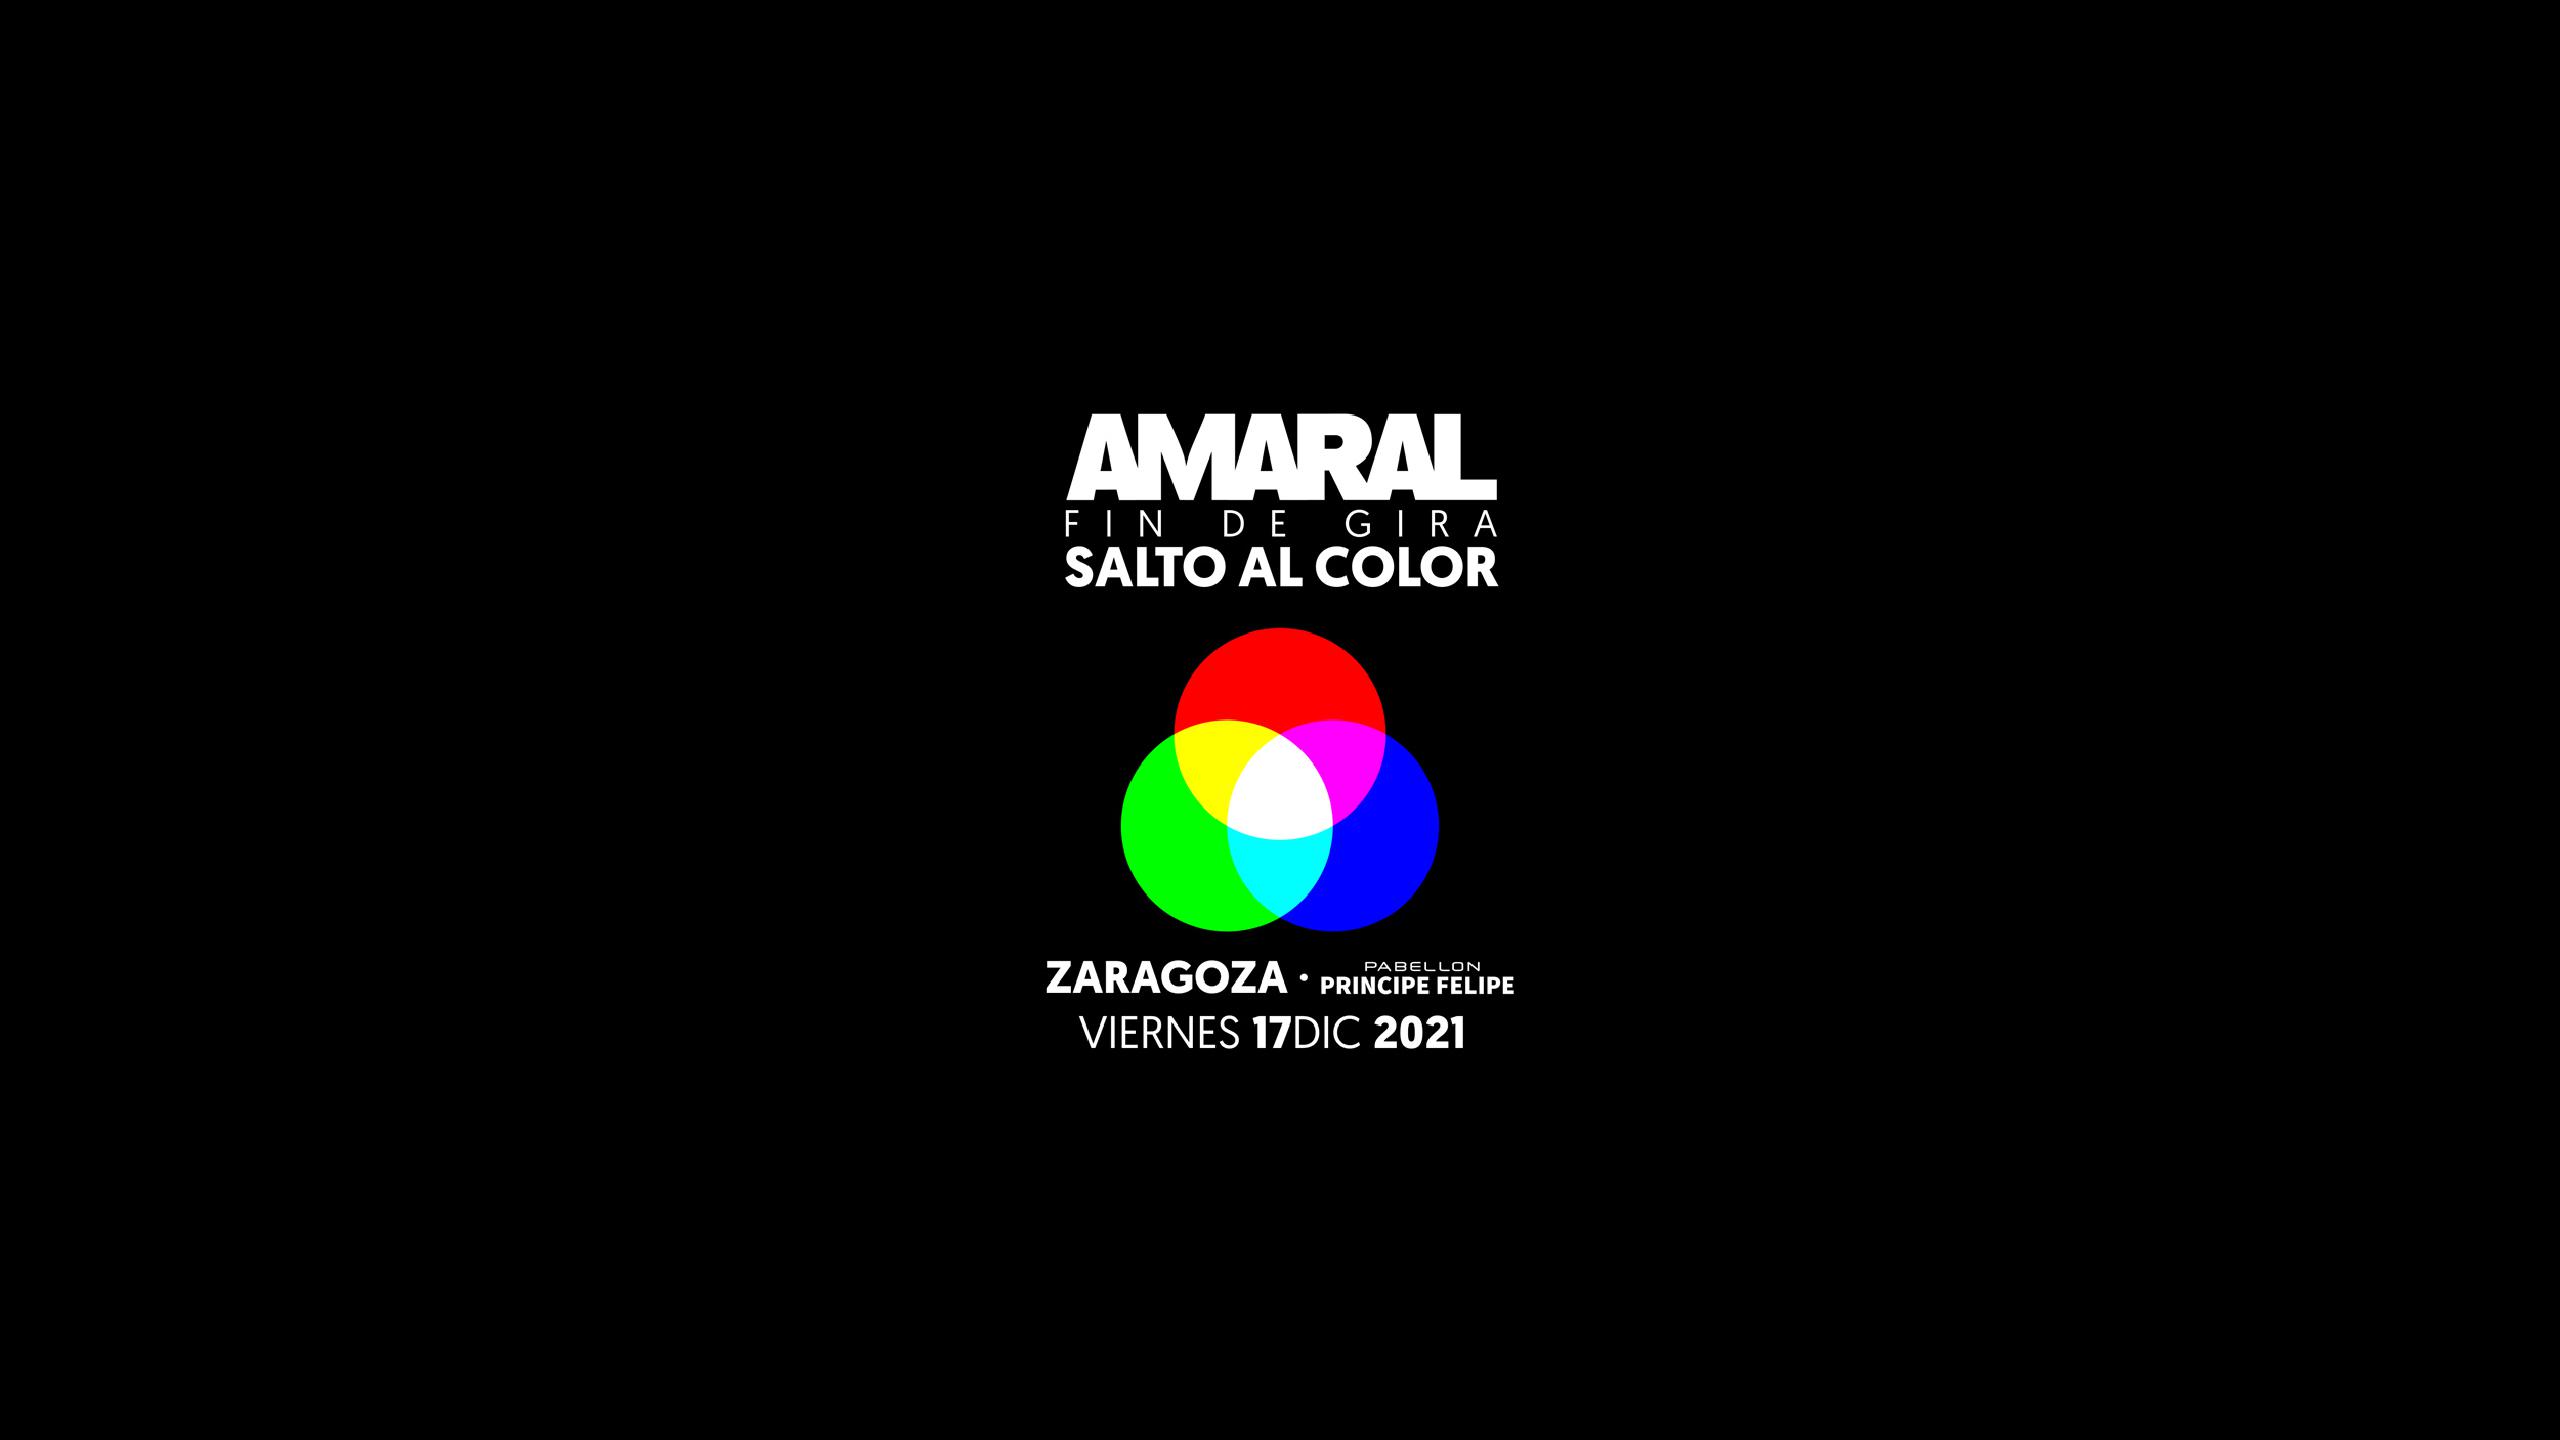 Fotografía promocional de Concierto de Amaral en Zaragoza